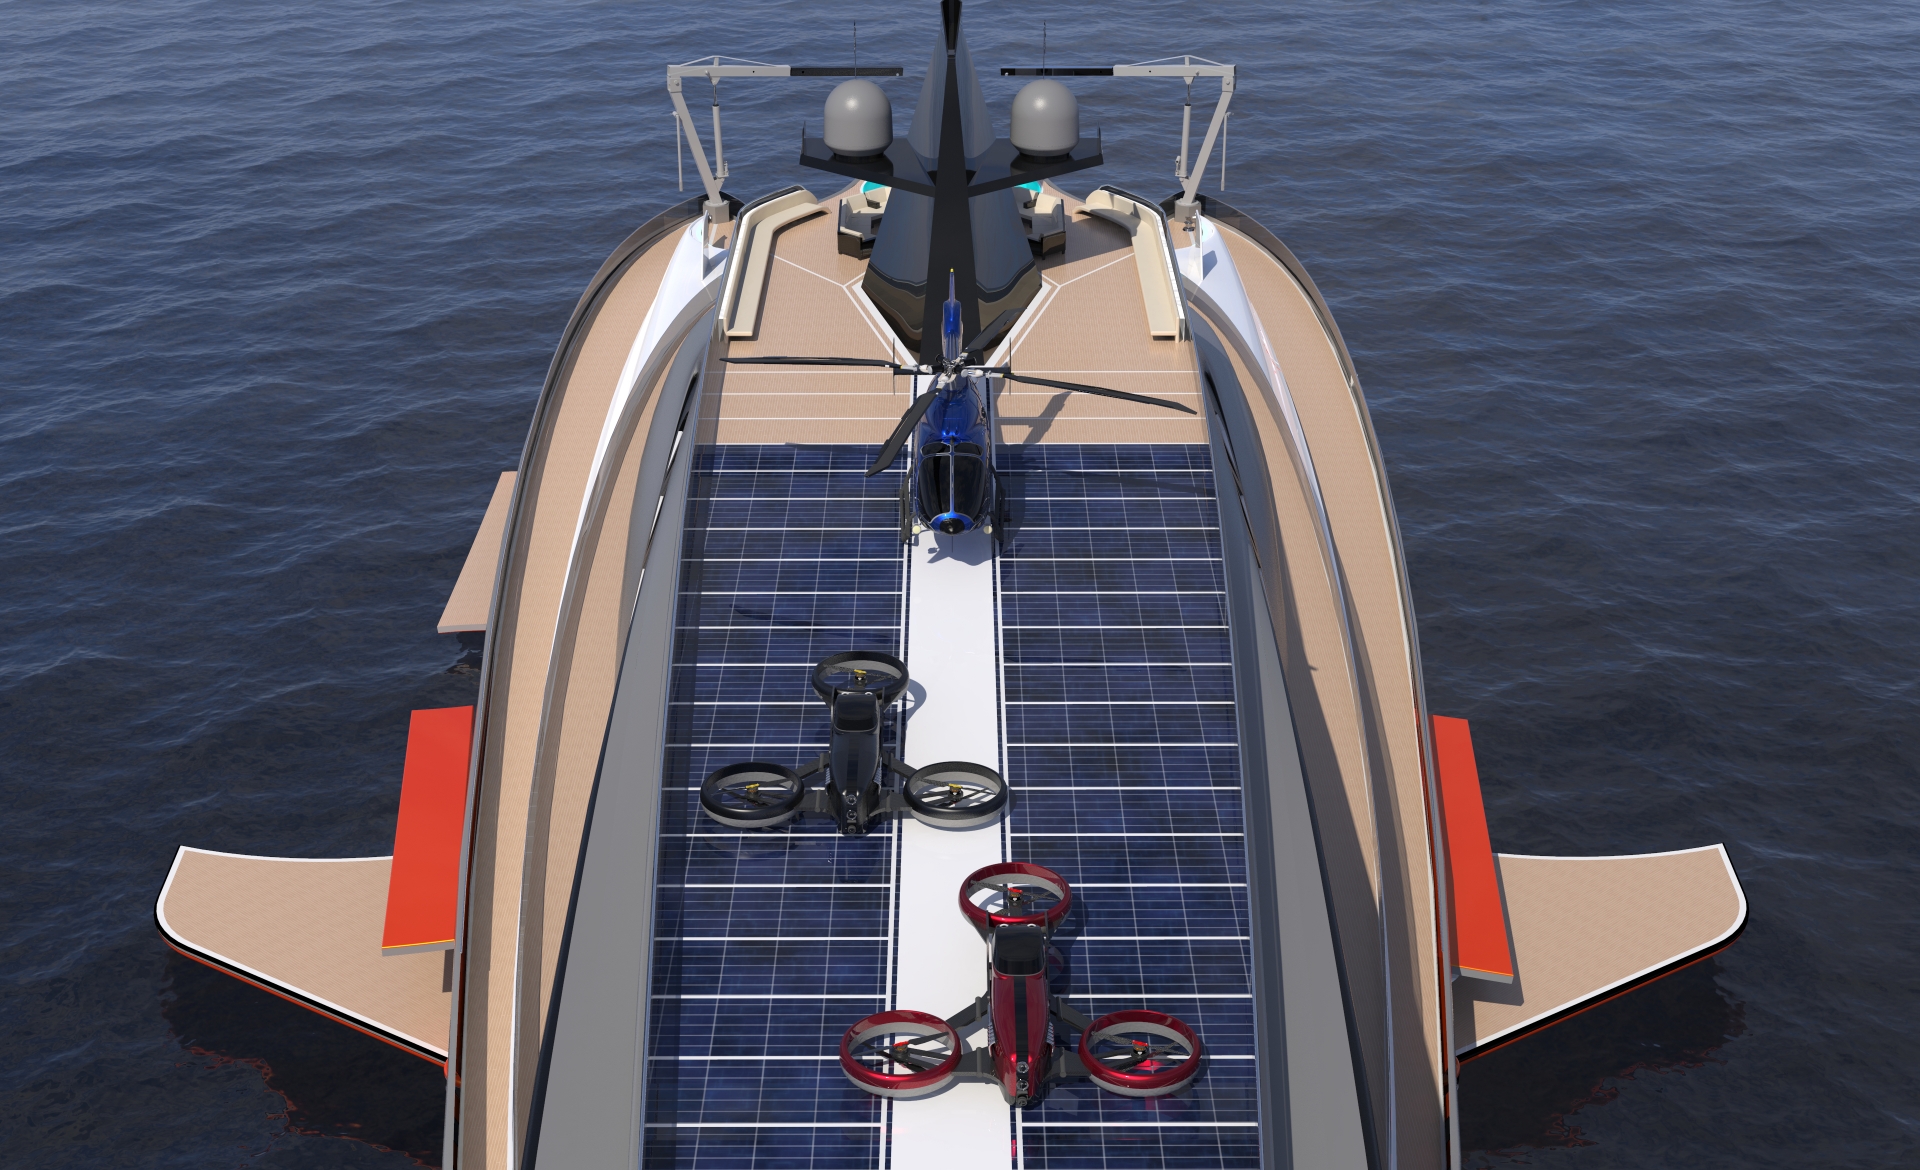 Tầng thượng của du thuyền là bãi đáp trực thăng cũng là nơi lắp những tấm năng lượng mặt trời, cung cấp điện chiếu sáng cho du thuyền.